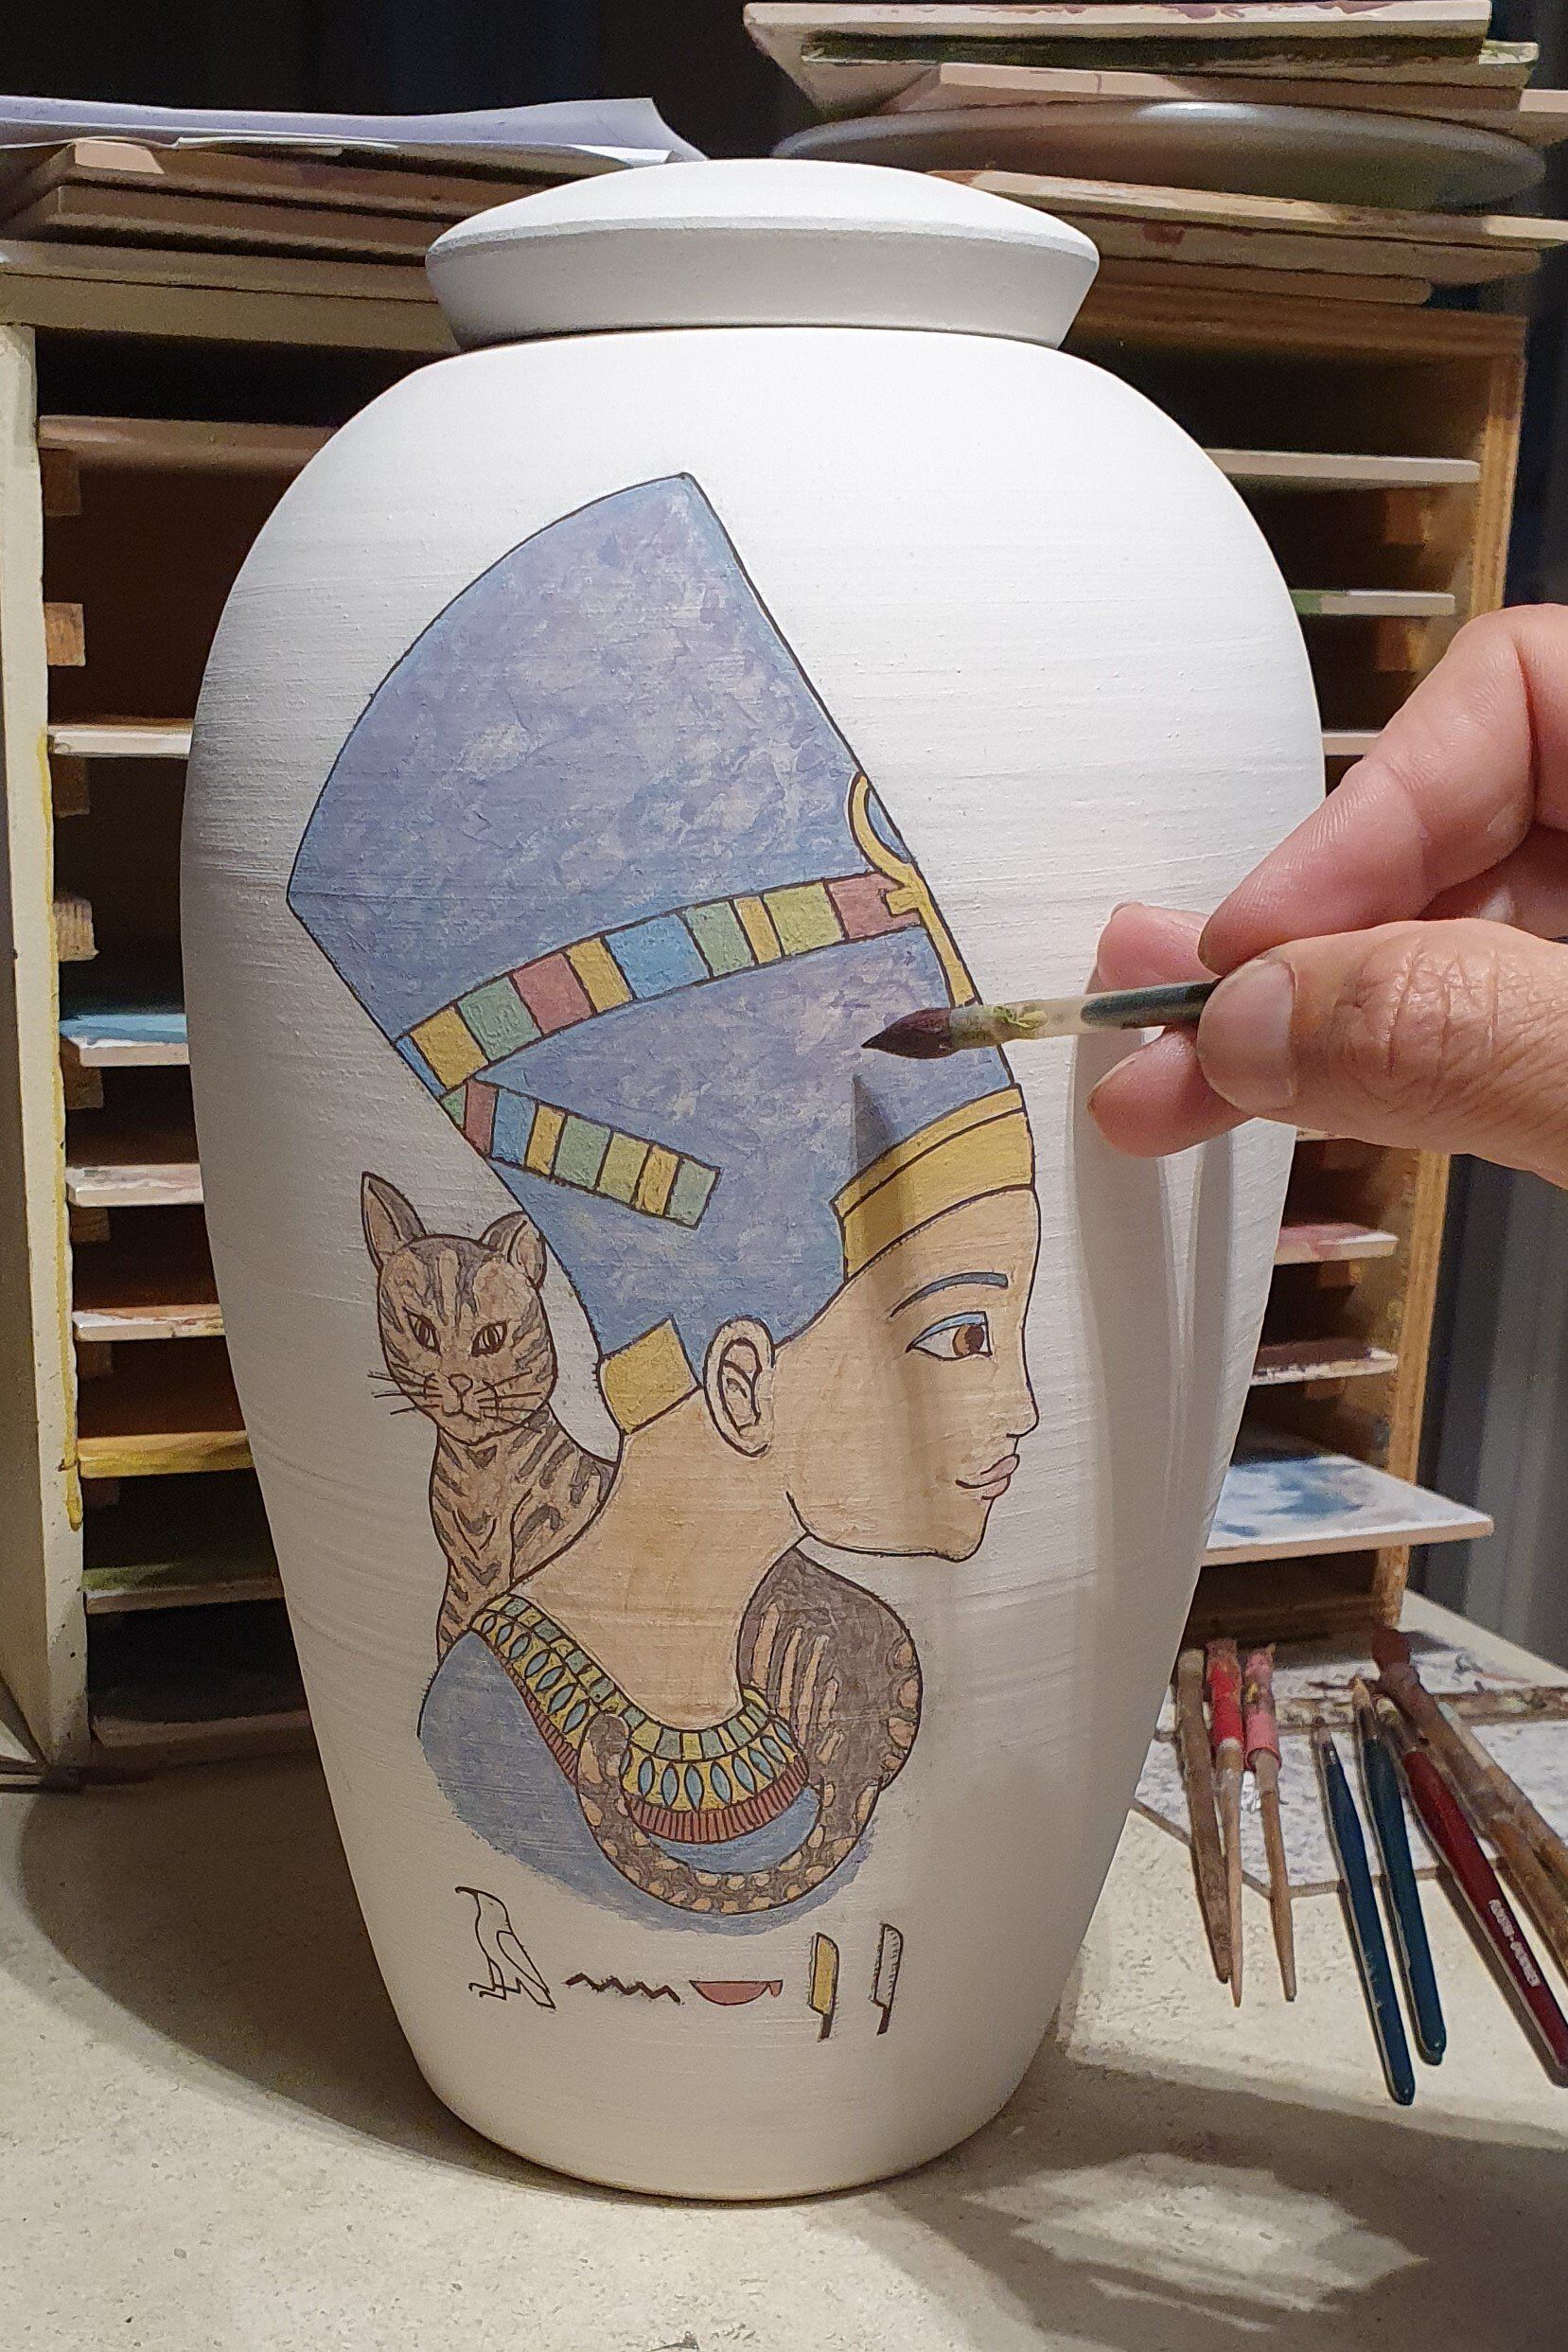 urn speciaalopdracht naar Egyptisch motief Nefertiti